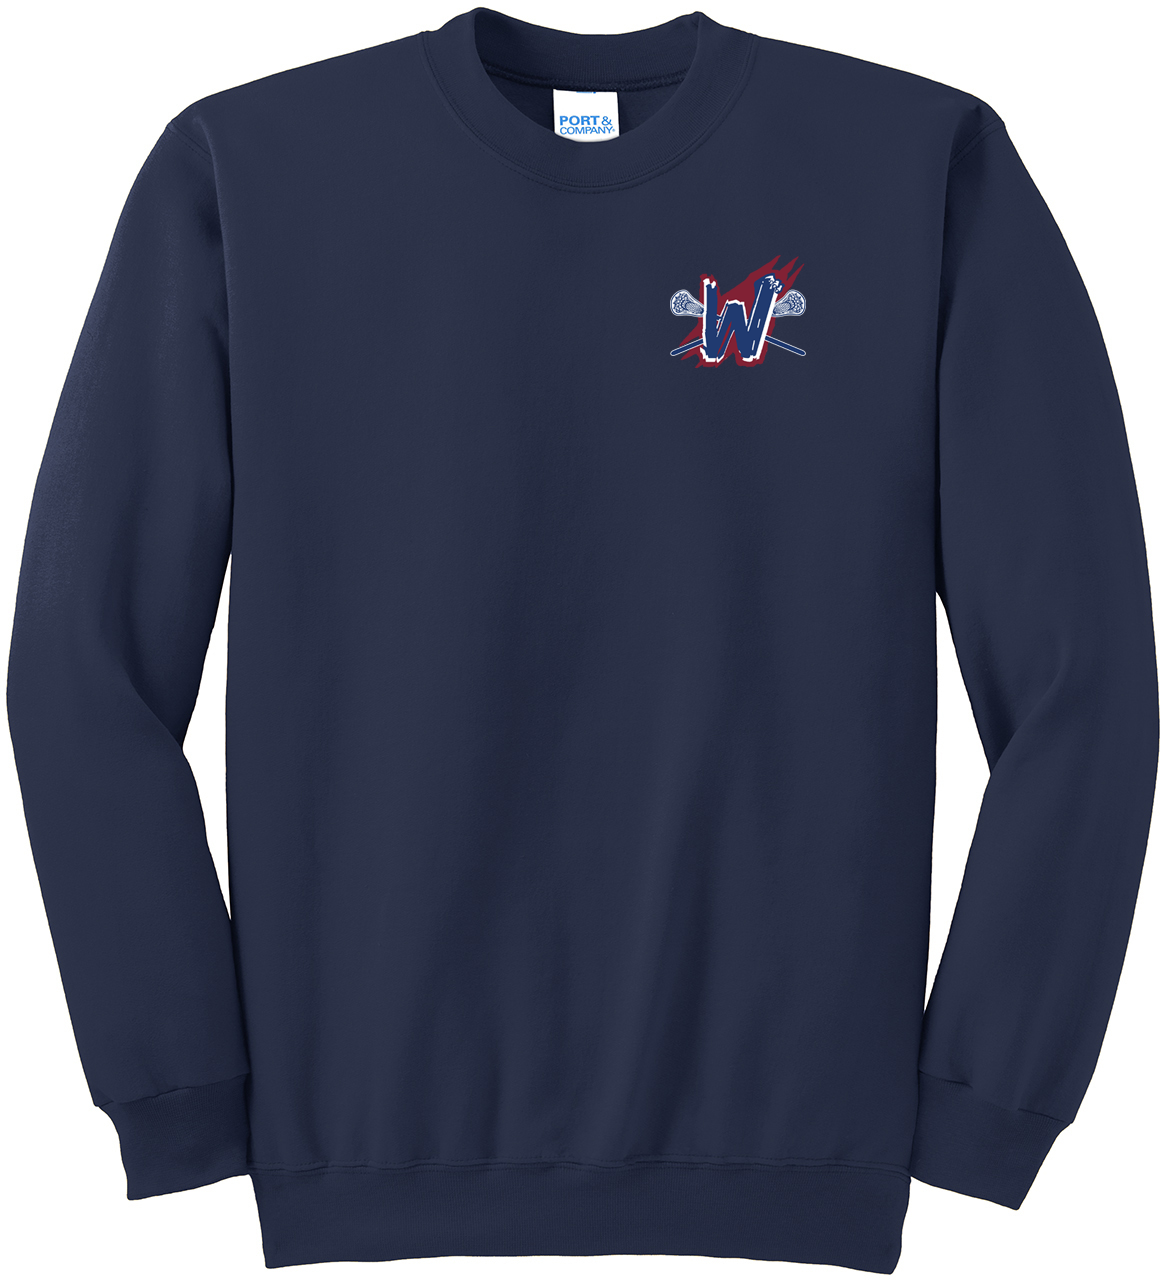 Woodstock Lacrosse Navy Crew Neck Sweater